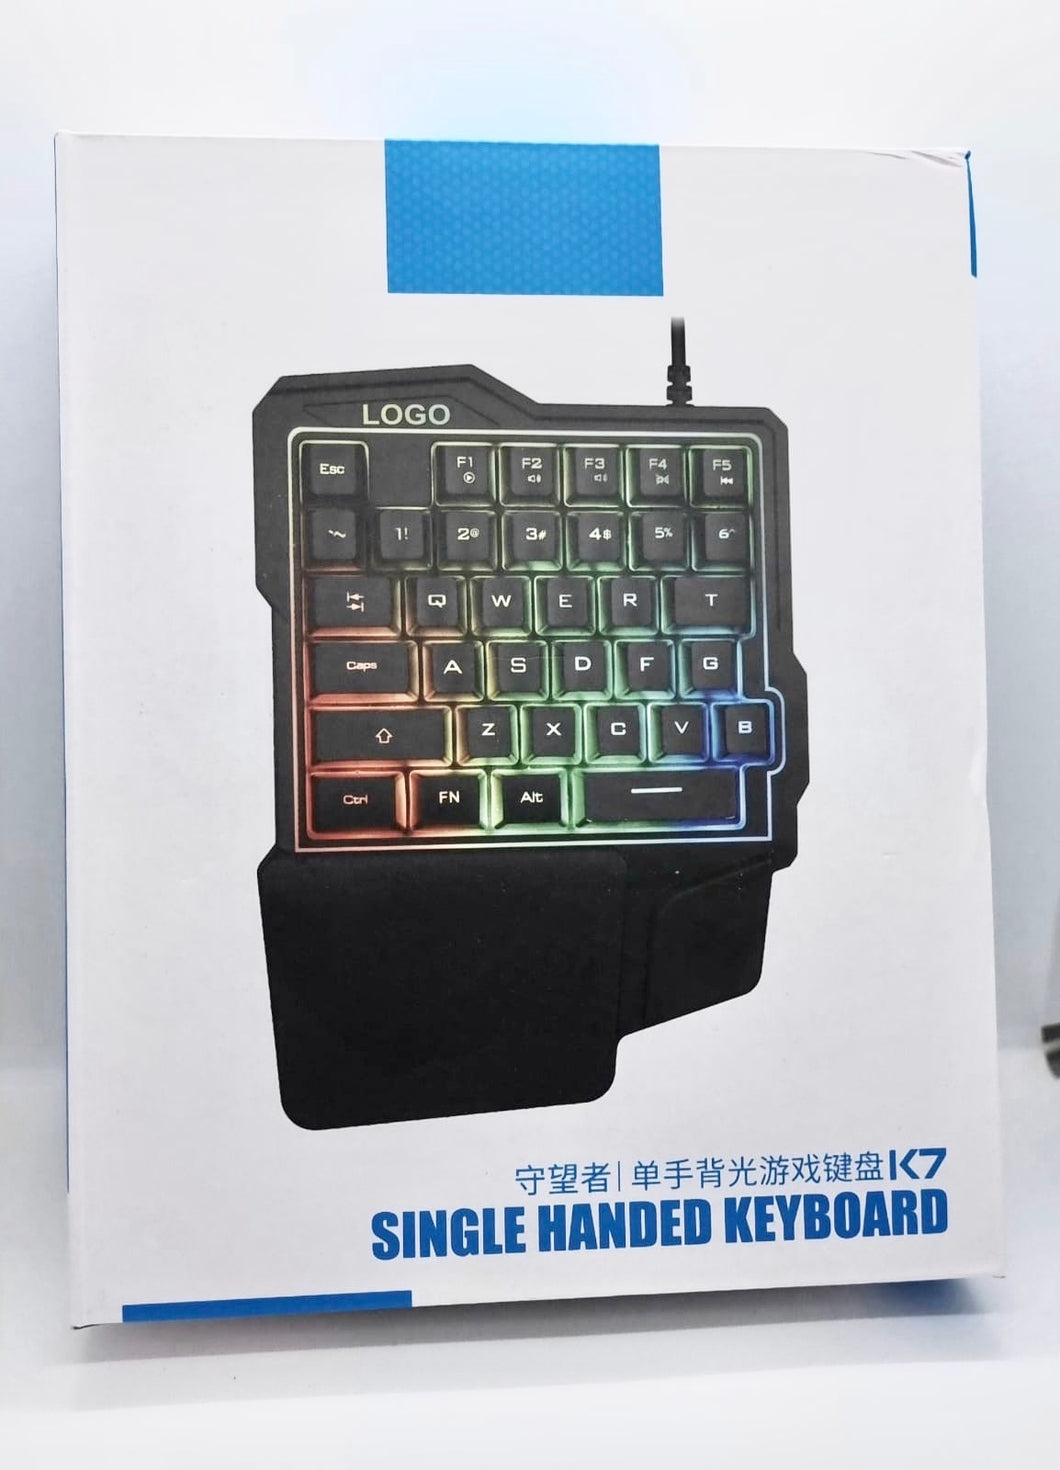 K7 Single handed keyboard